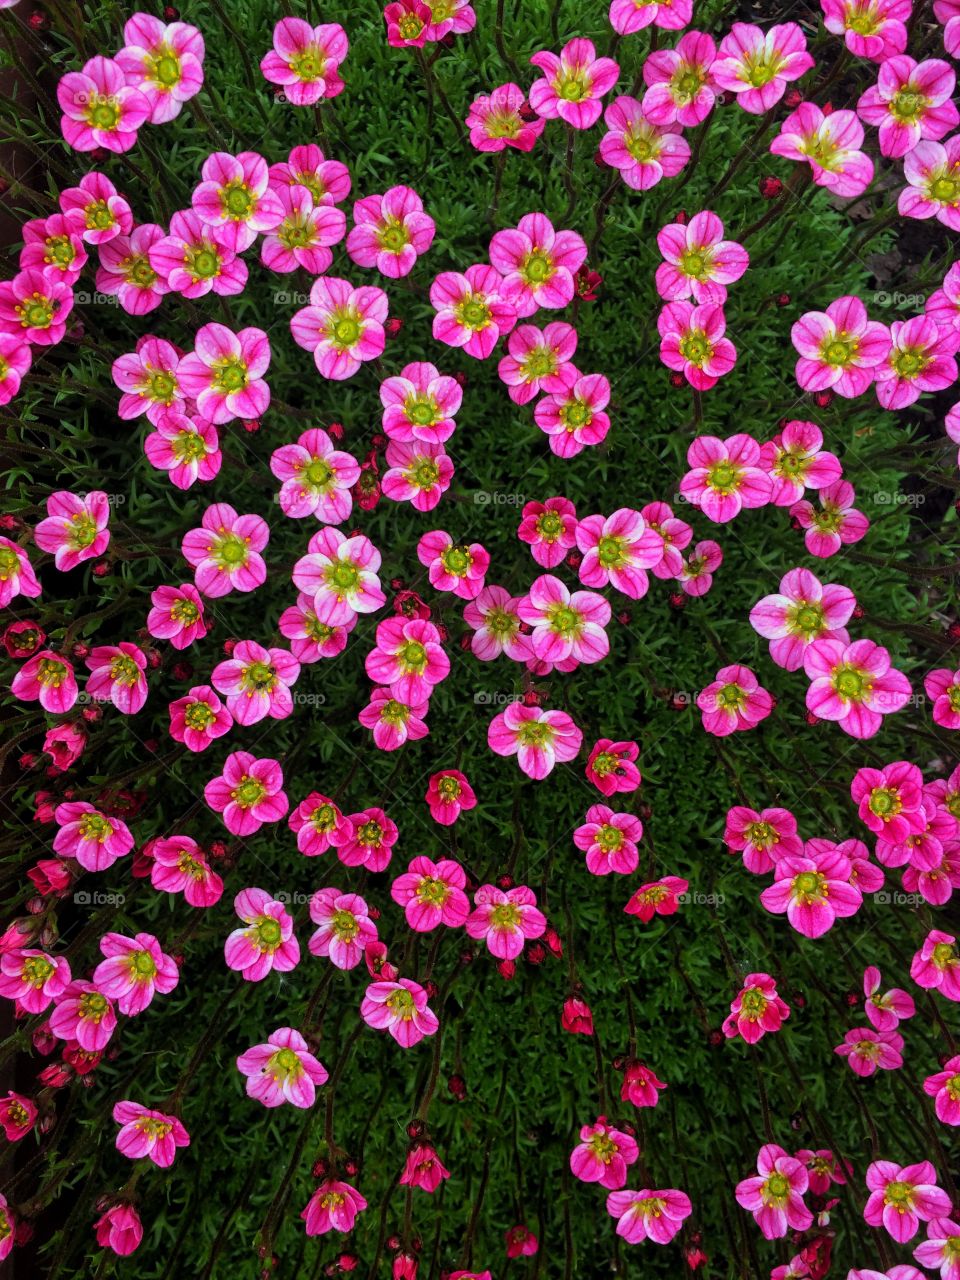 Blossom garden flowers saxifrage background 